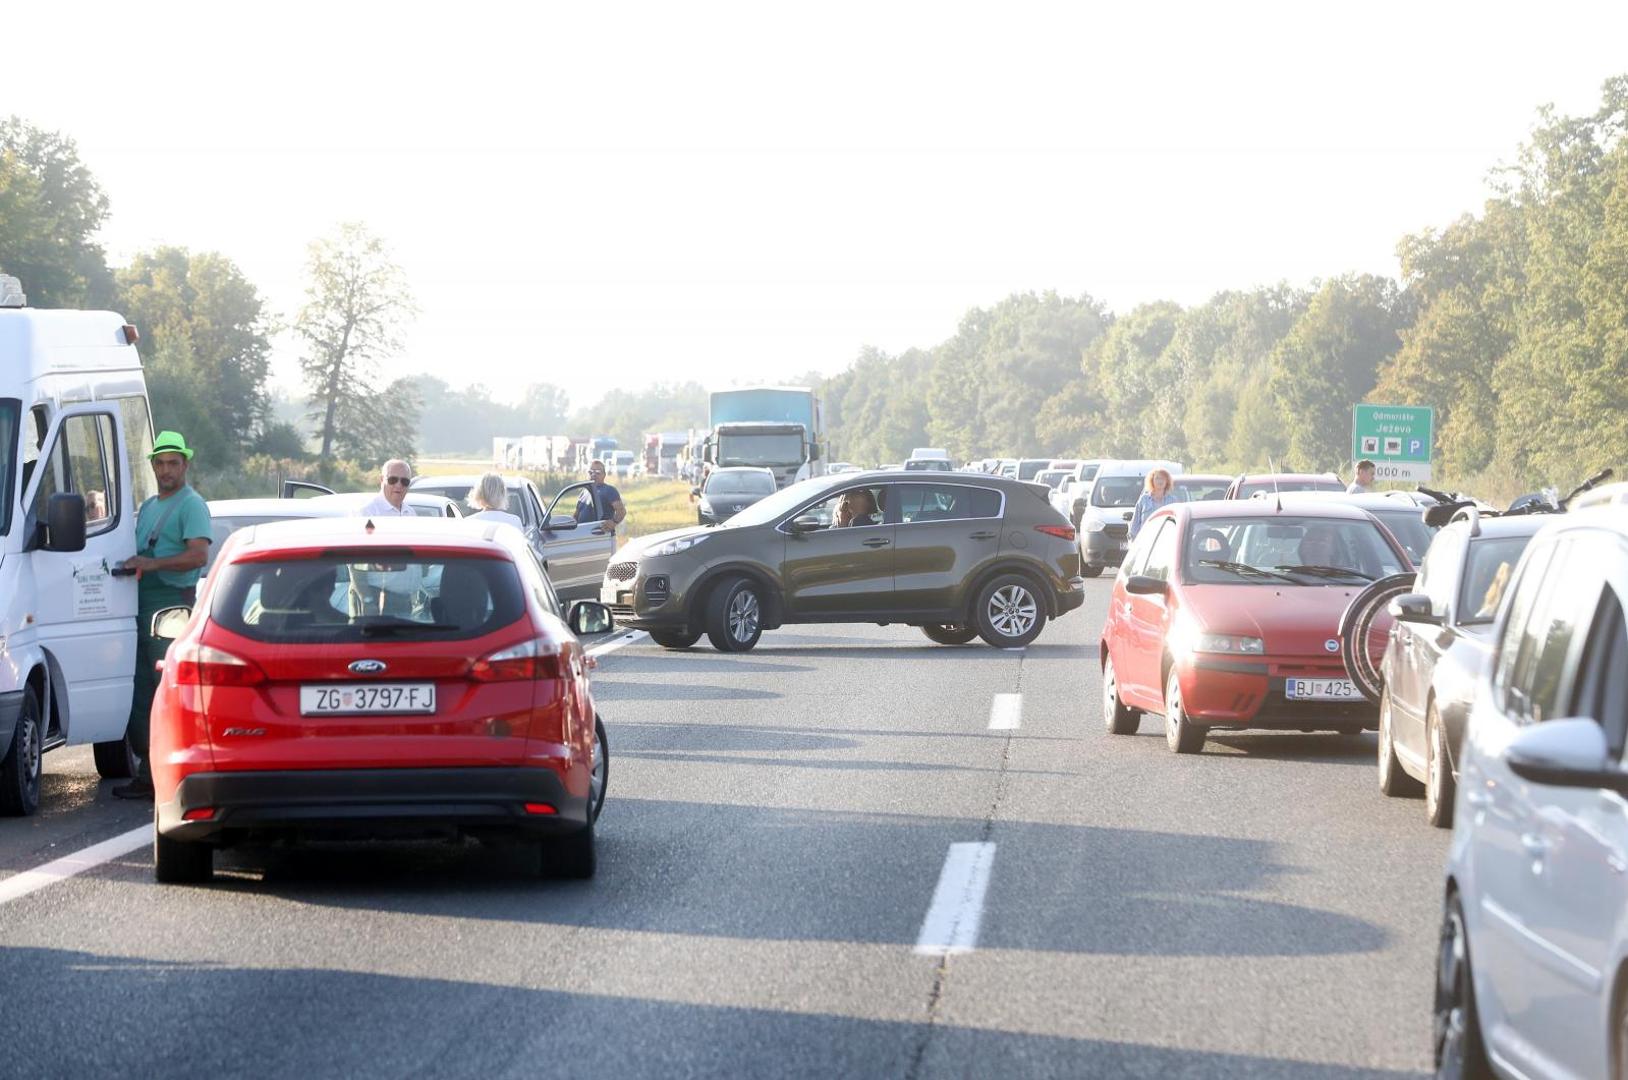 09.09.2020., Zagreb - U prometnoj nesreci na autocesti A3 kod odmorista Jezevo sudjelovalo je nekoliko vozila. Dvoje ljudi je poginulo, a policijski ocevid je u tijeku. Photo: Zeljko Lukunic/PIXSELL